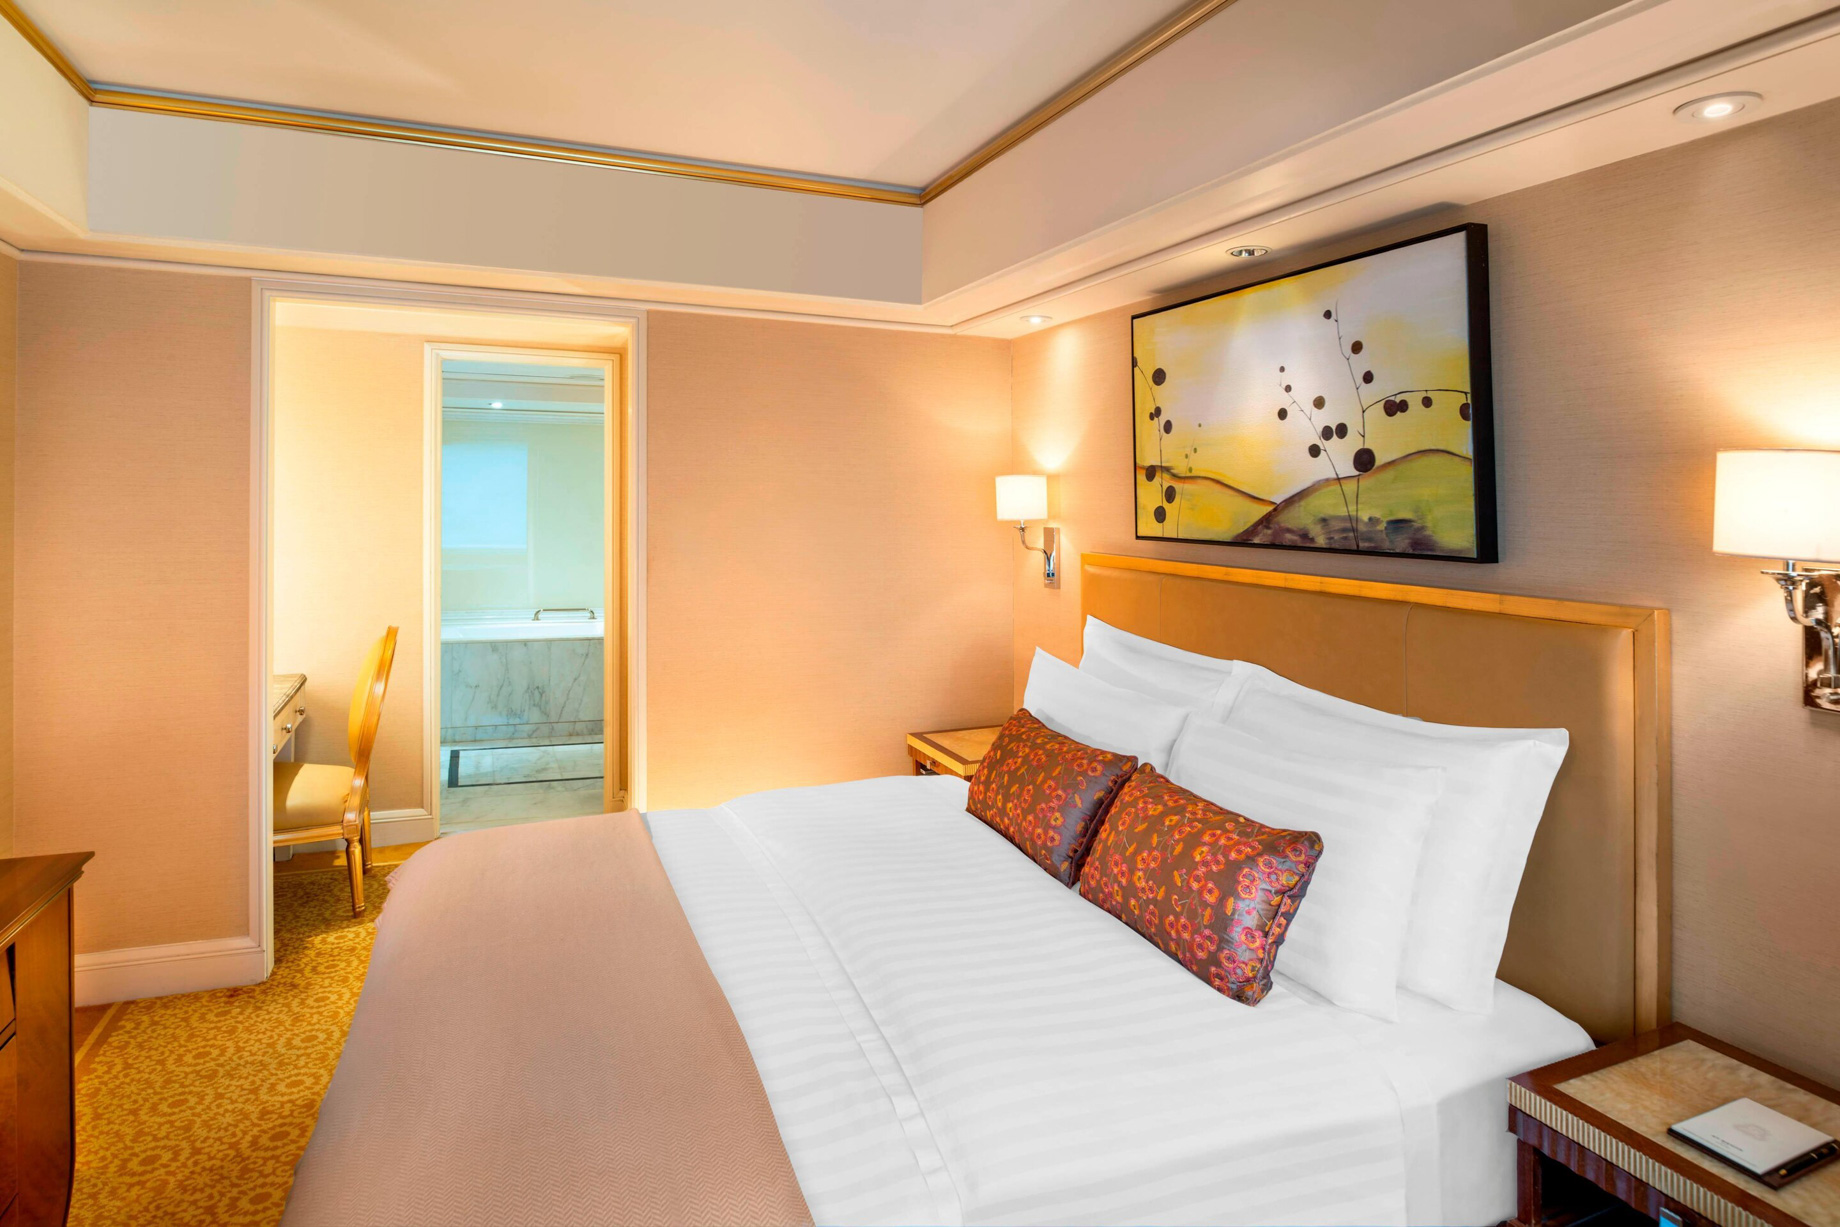 The St. Regis Beijing Hotel - Beijing, China - Statesman Suite King Bedroom